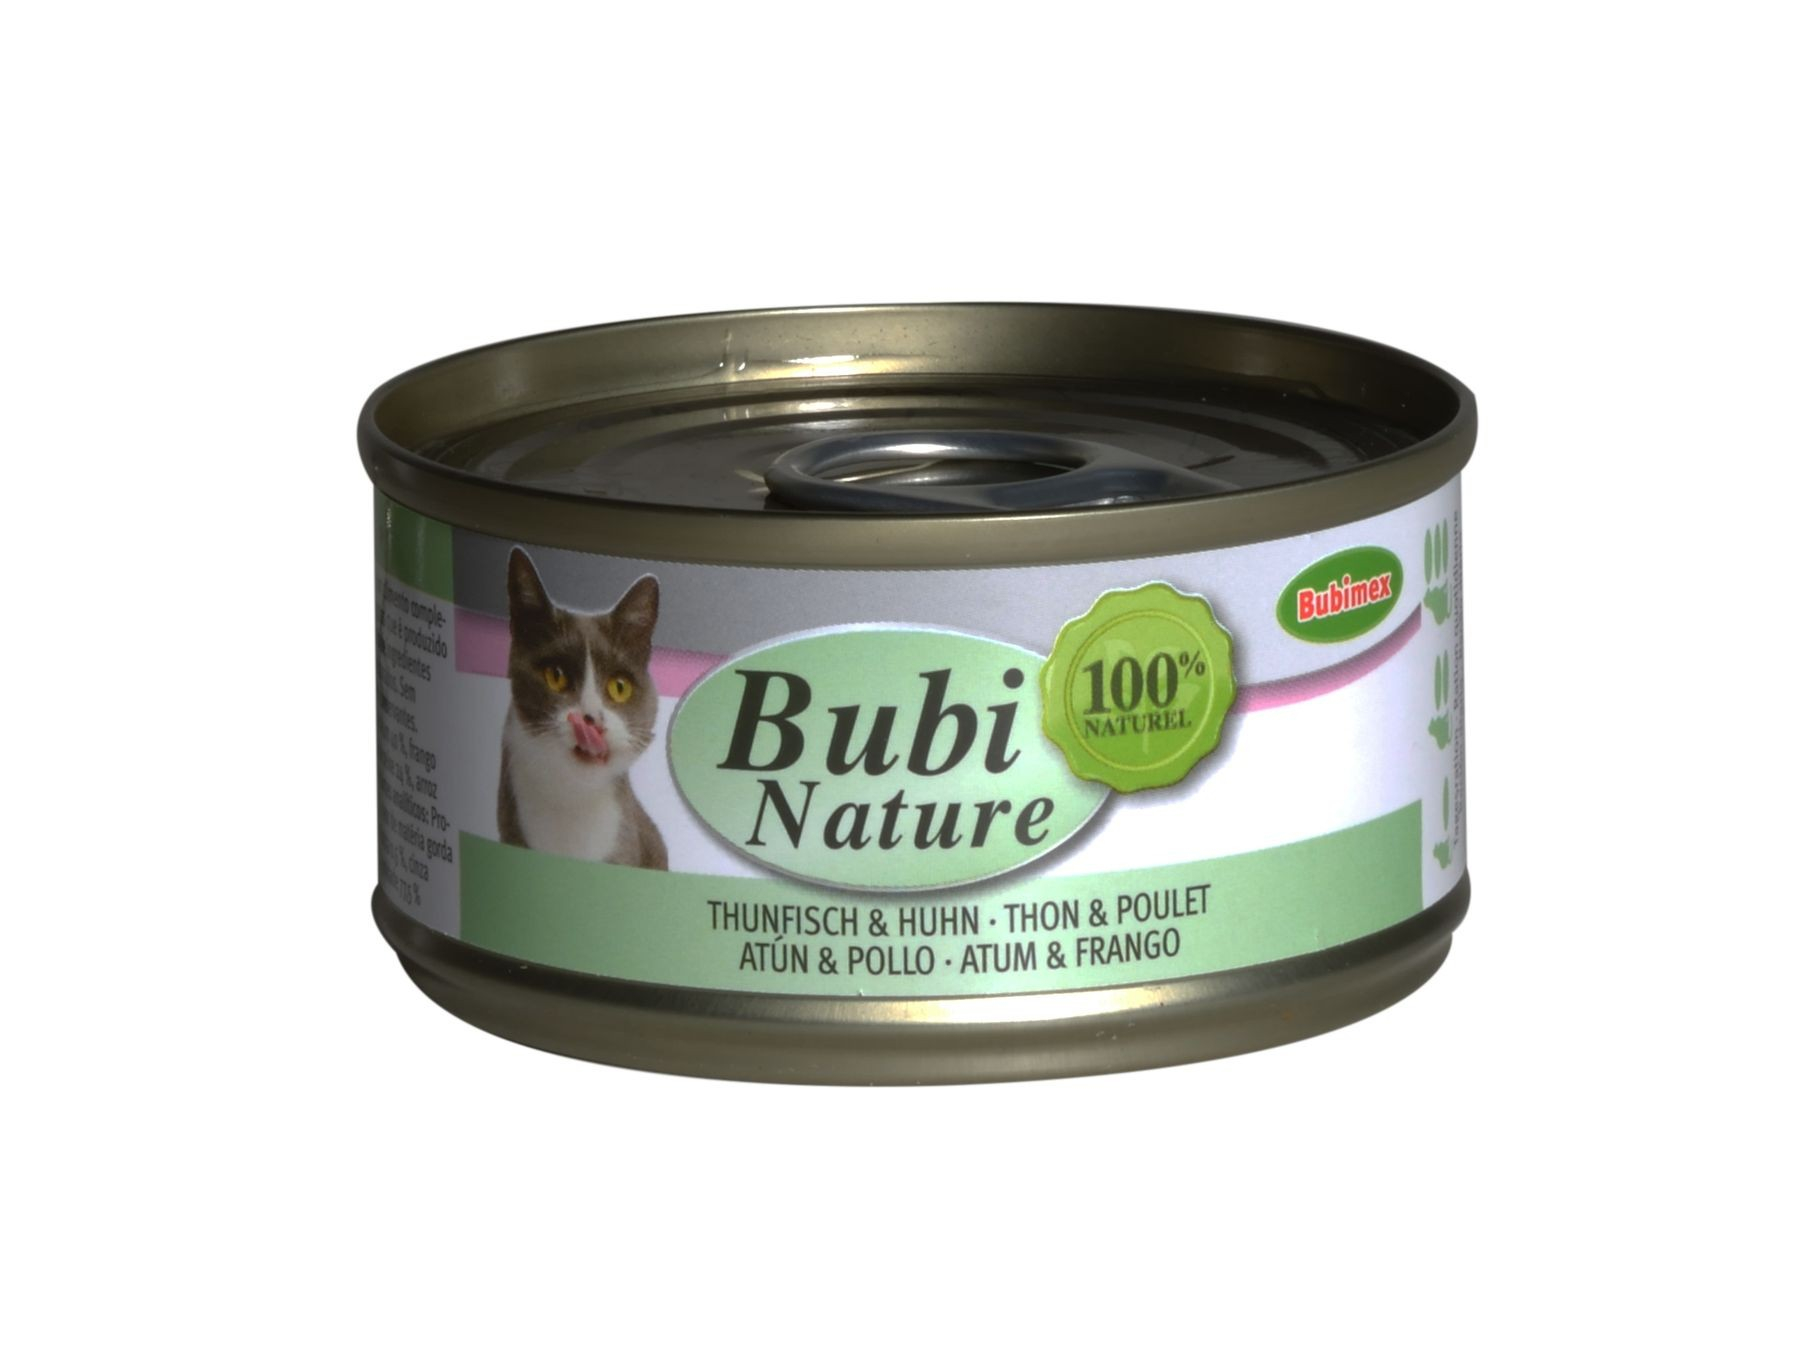 BUBIMEX Bubi Nature Comida húmeda para gatos Atún y Pollo